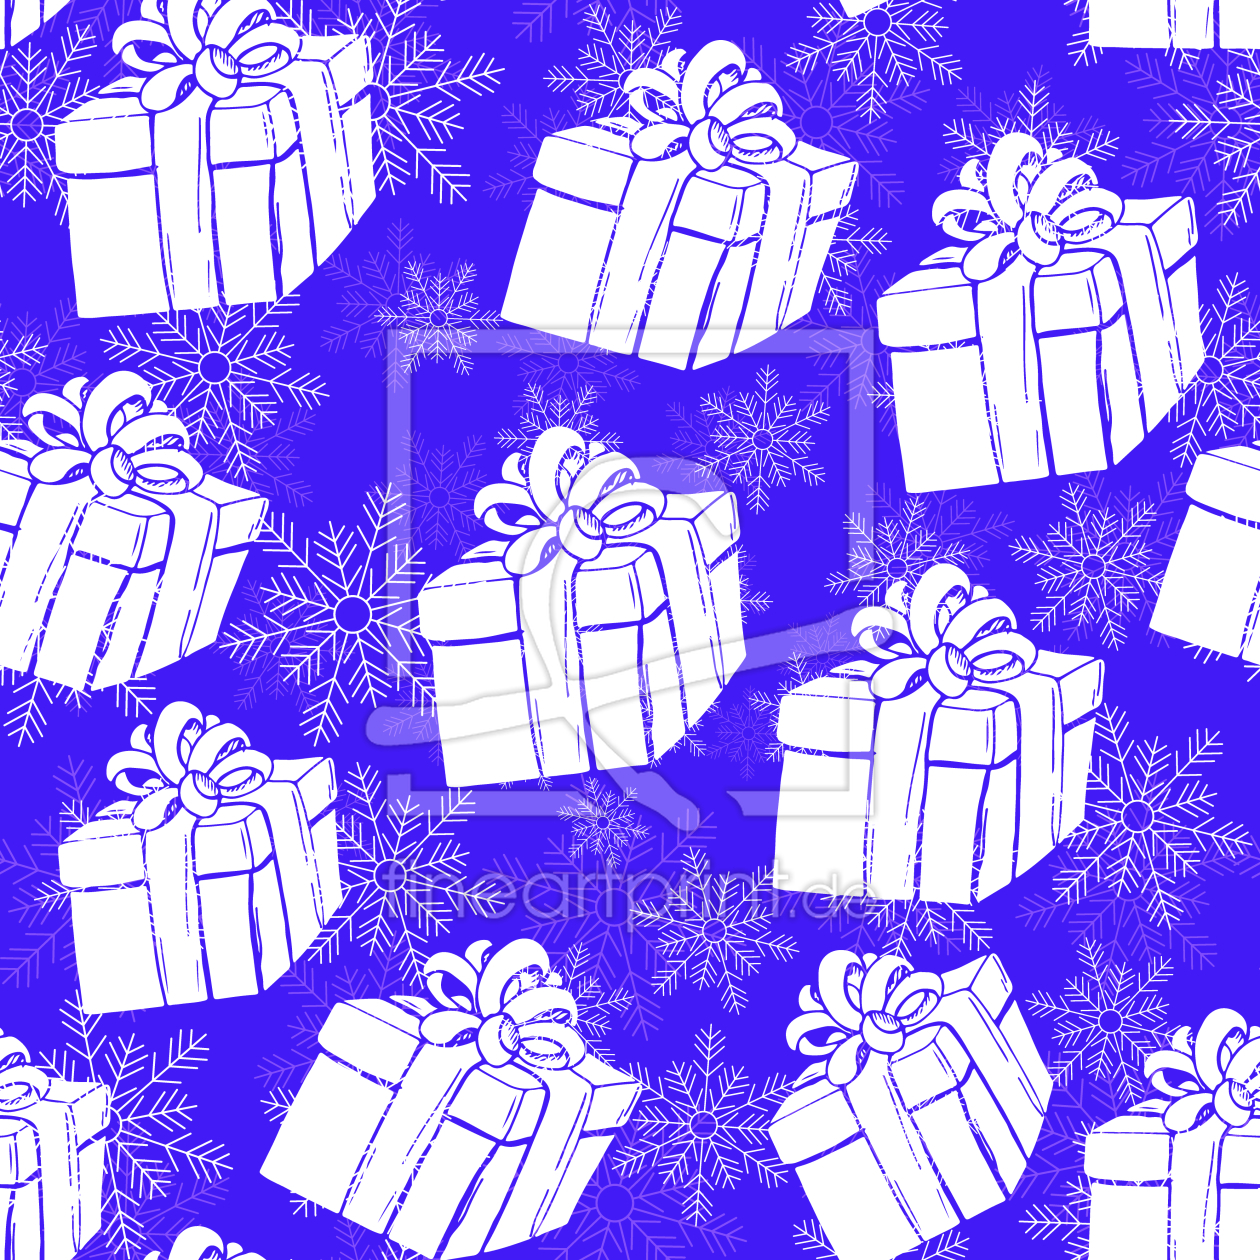 Bild-Nr.: 9007771 Winter Geschenkschachteln erstellt von patterndesigns-com